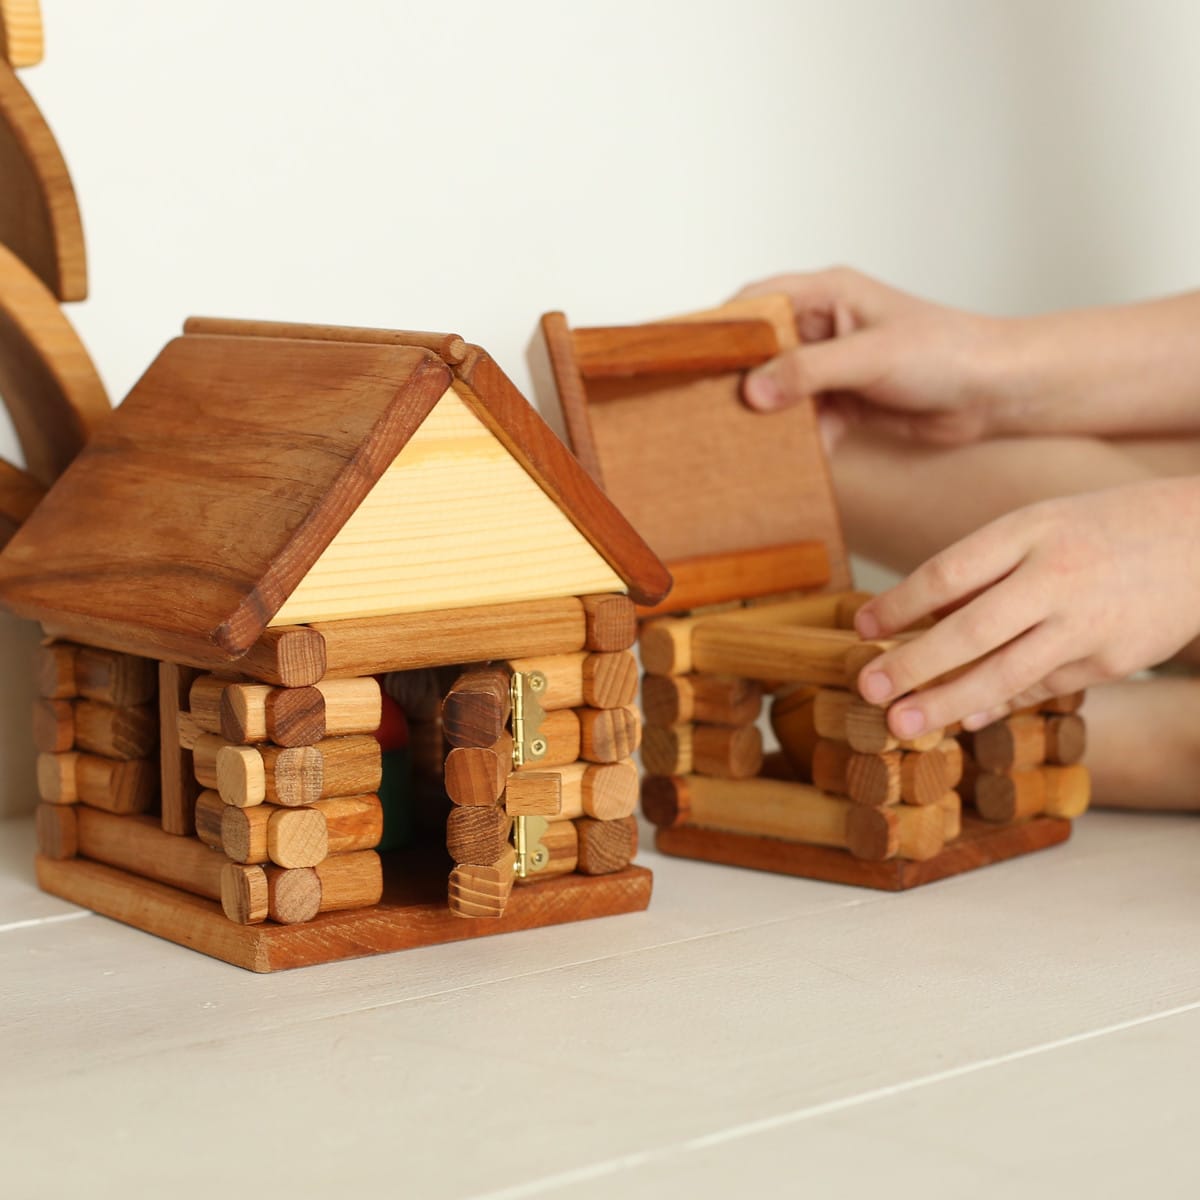 Рейтинг топ-5 лучших деревянных игрушек для детей 3-4 лет по версии КП